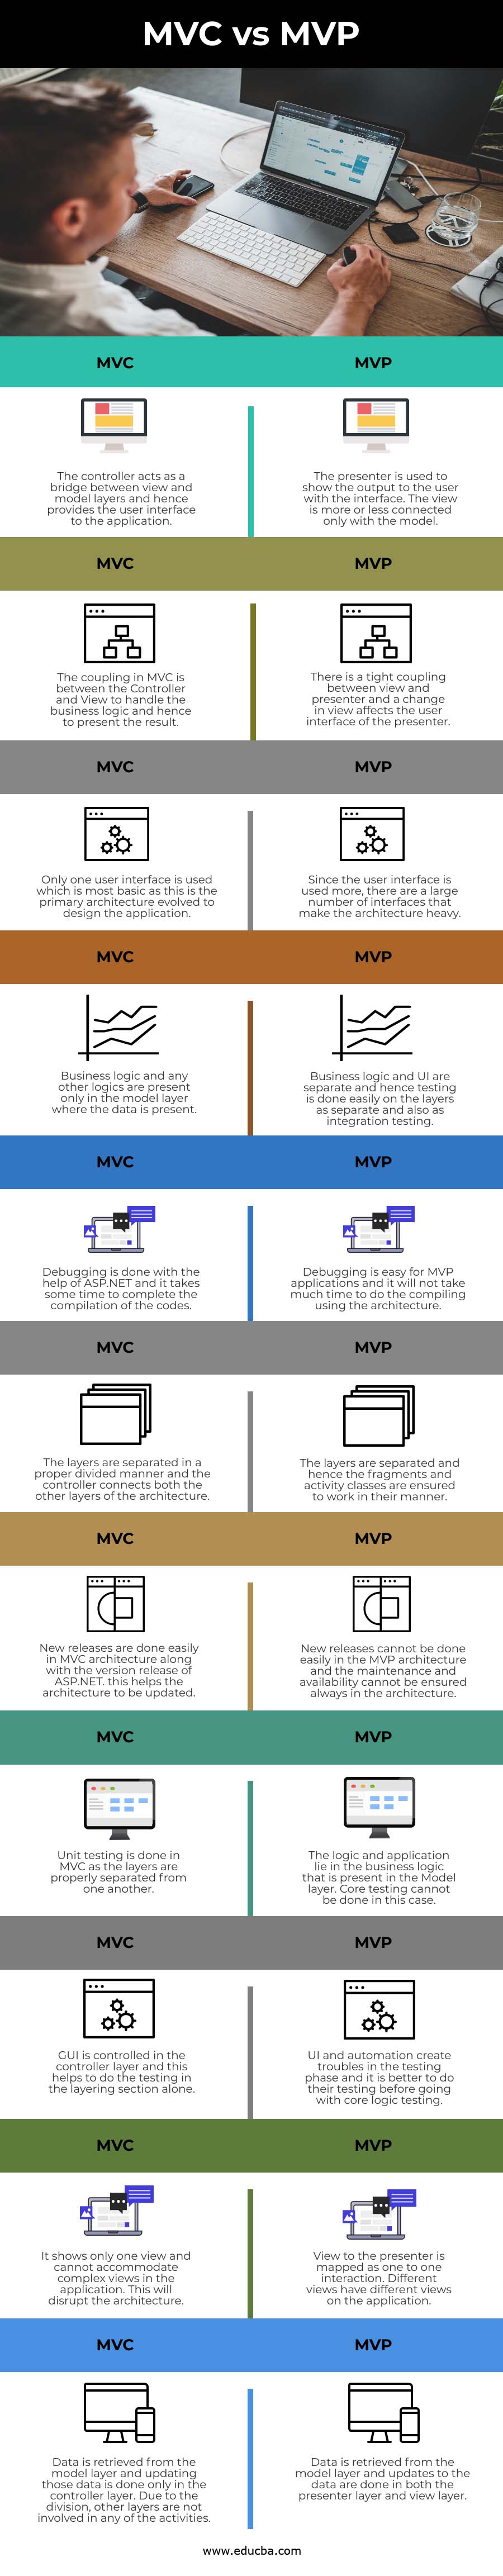 MVC vs MVP info